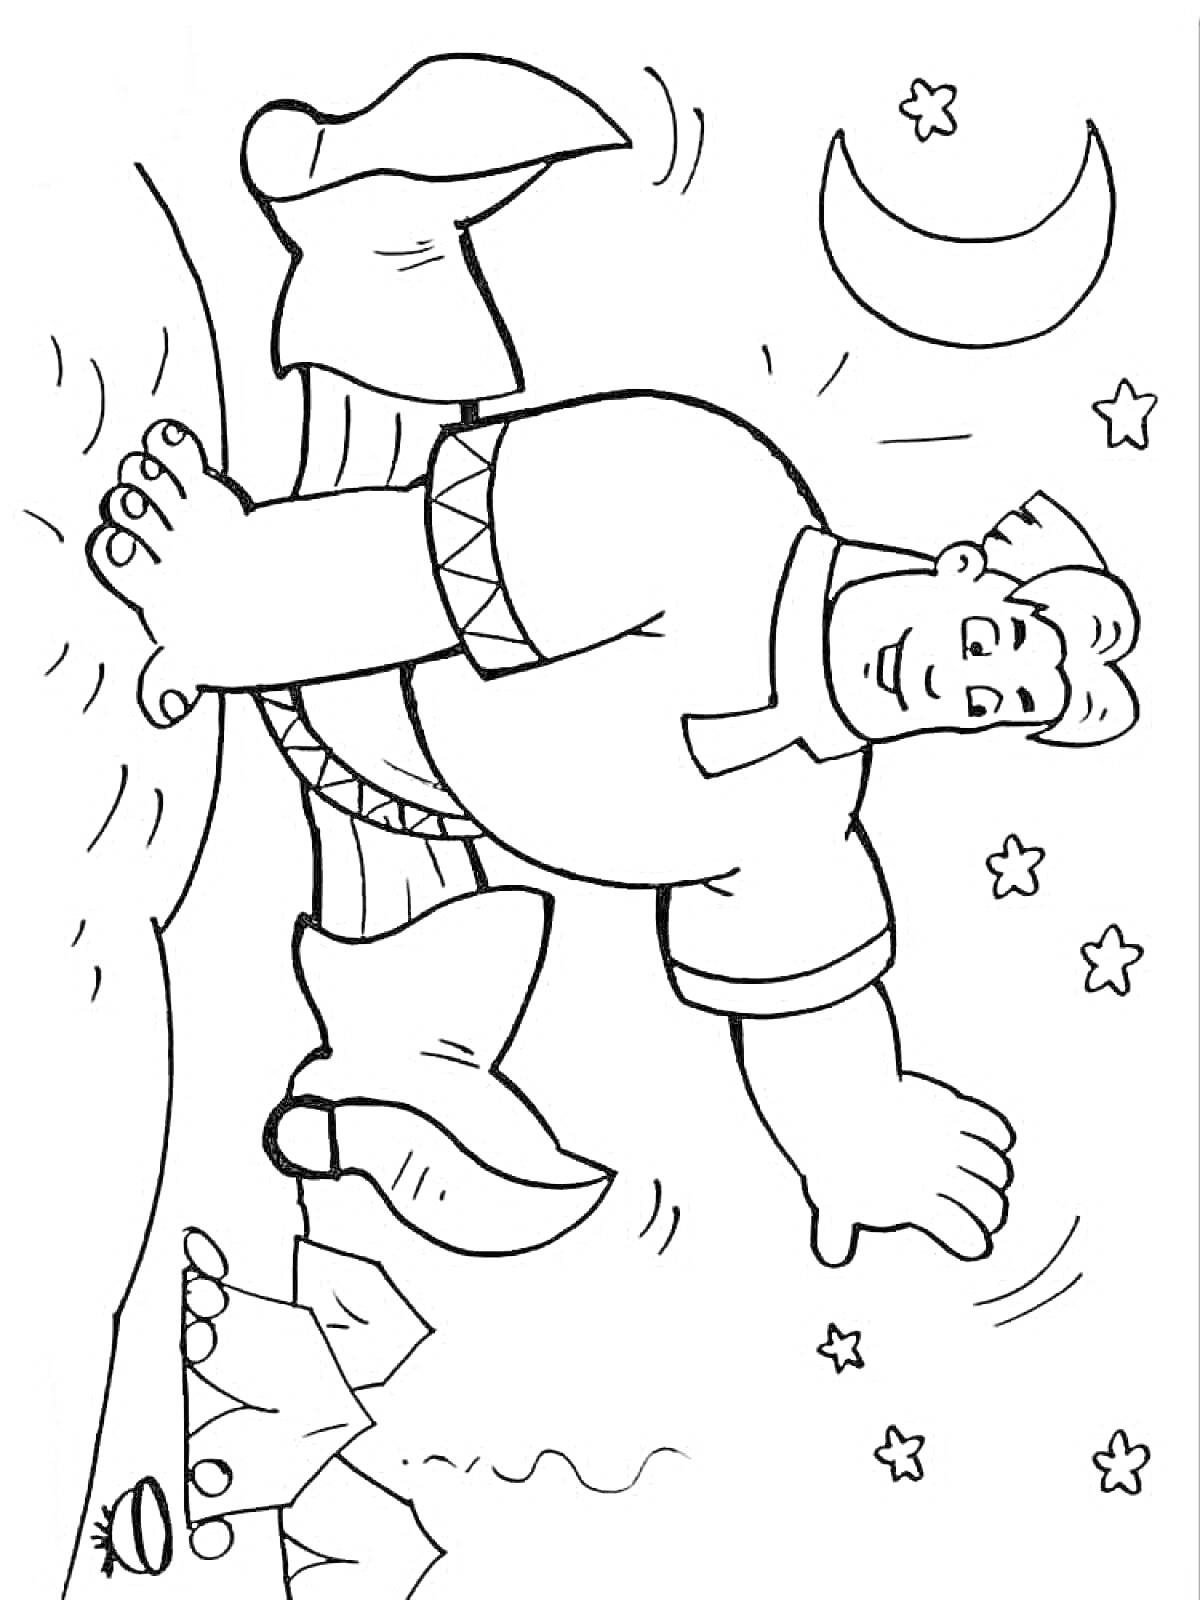 Раскраска Богатырь в сапогах на ночном фоне с луной и звездами